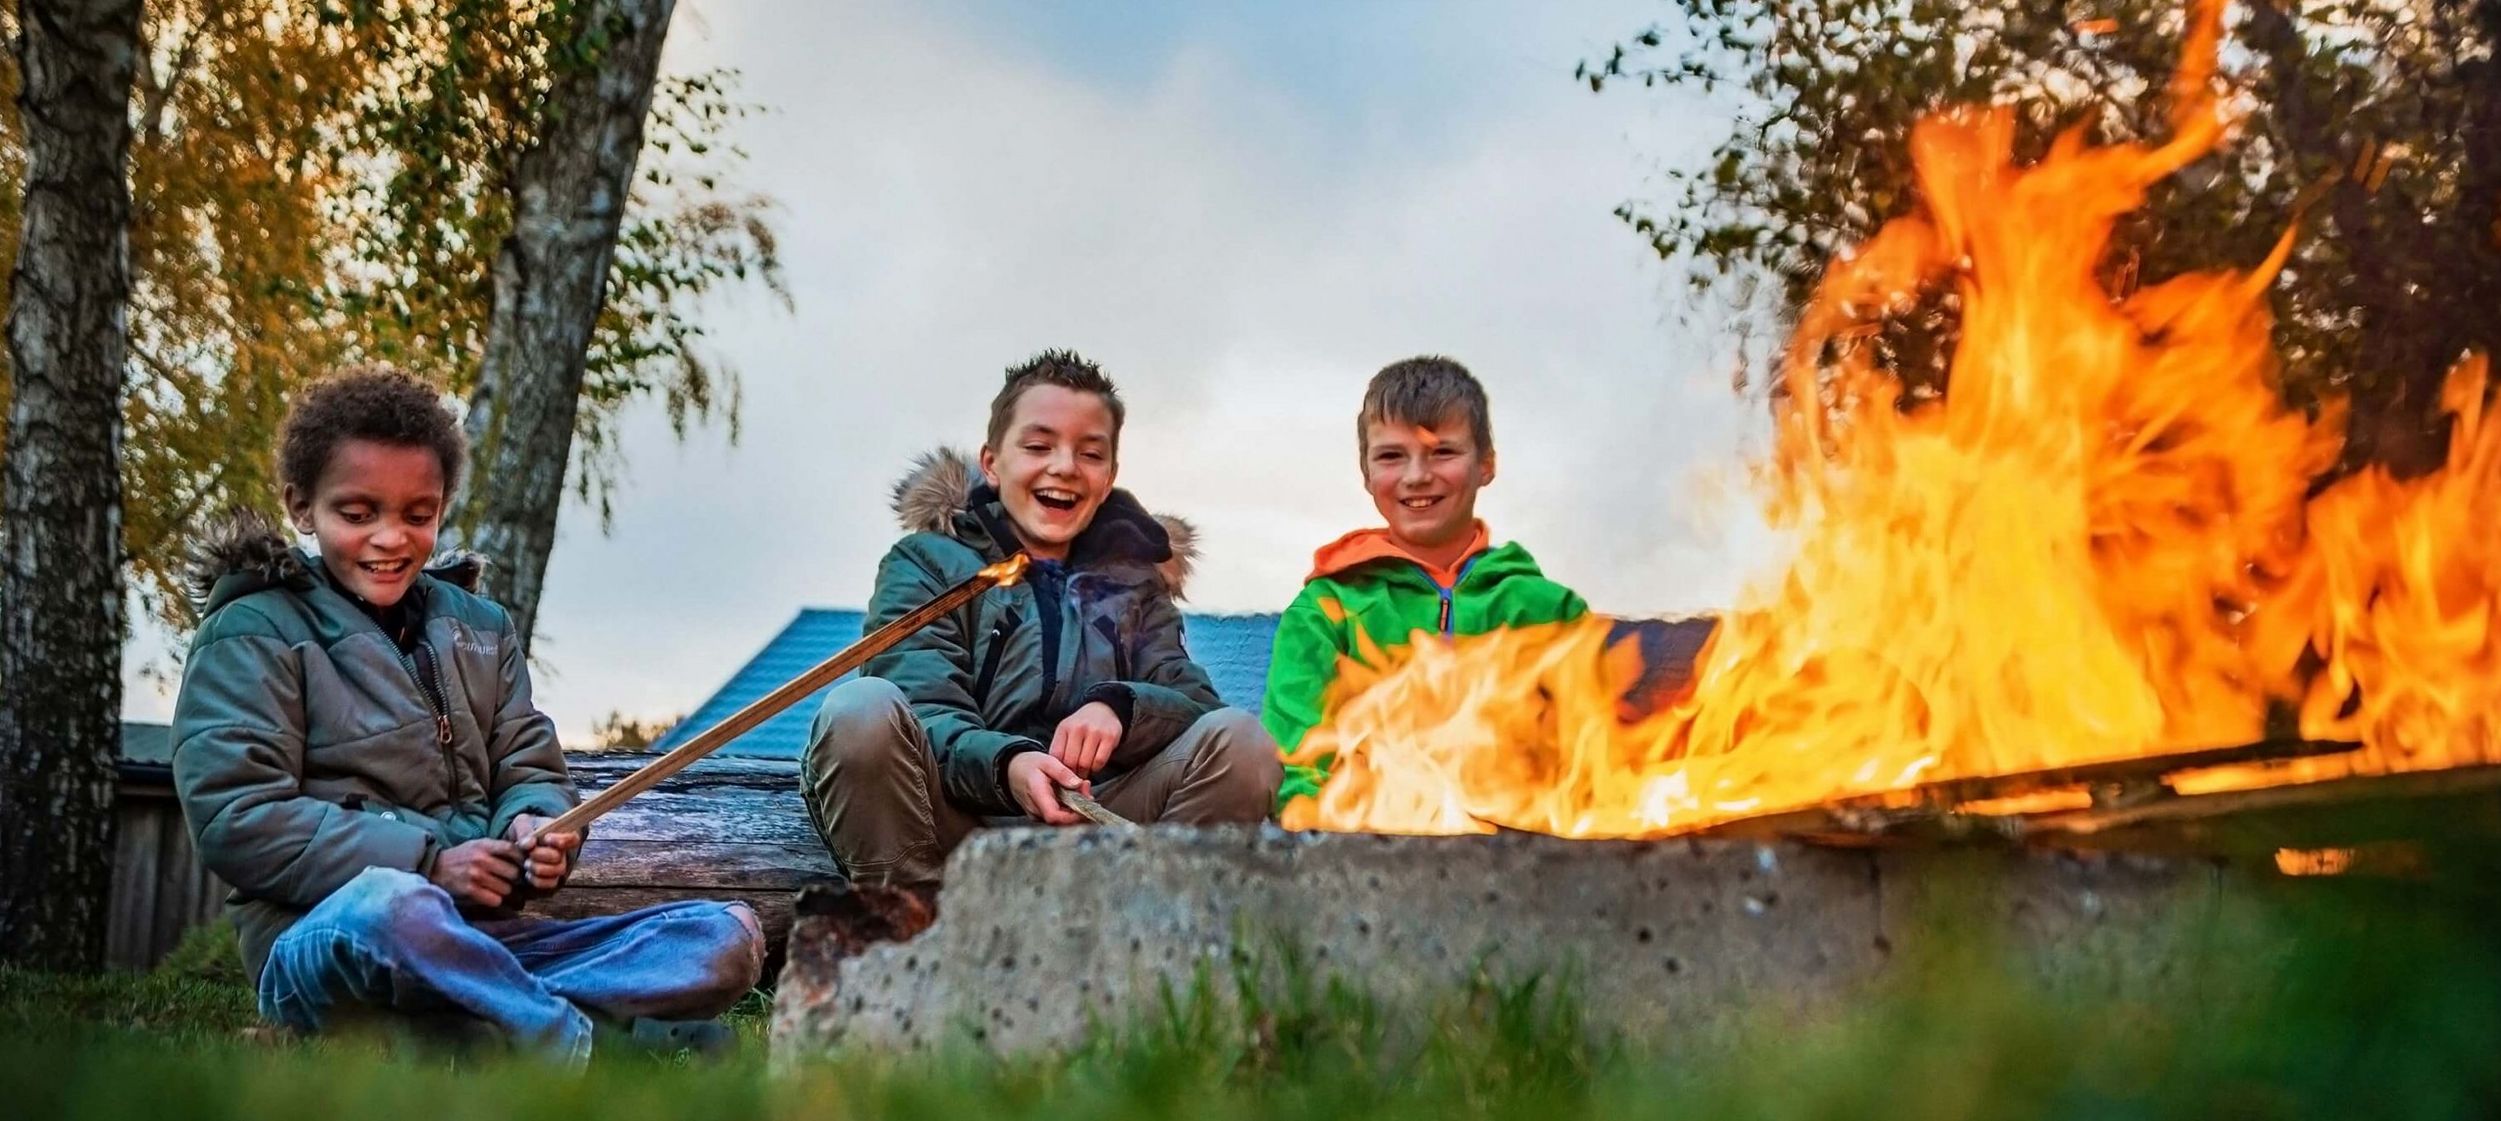 Kinder am Lagerfeuer beim Stockbrot grillen